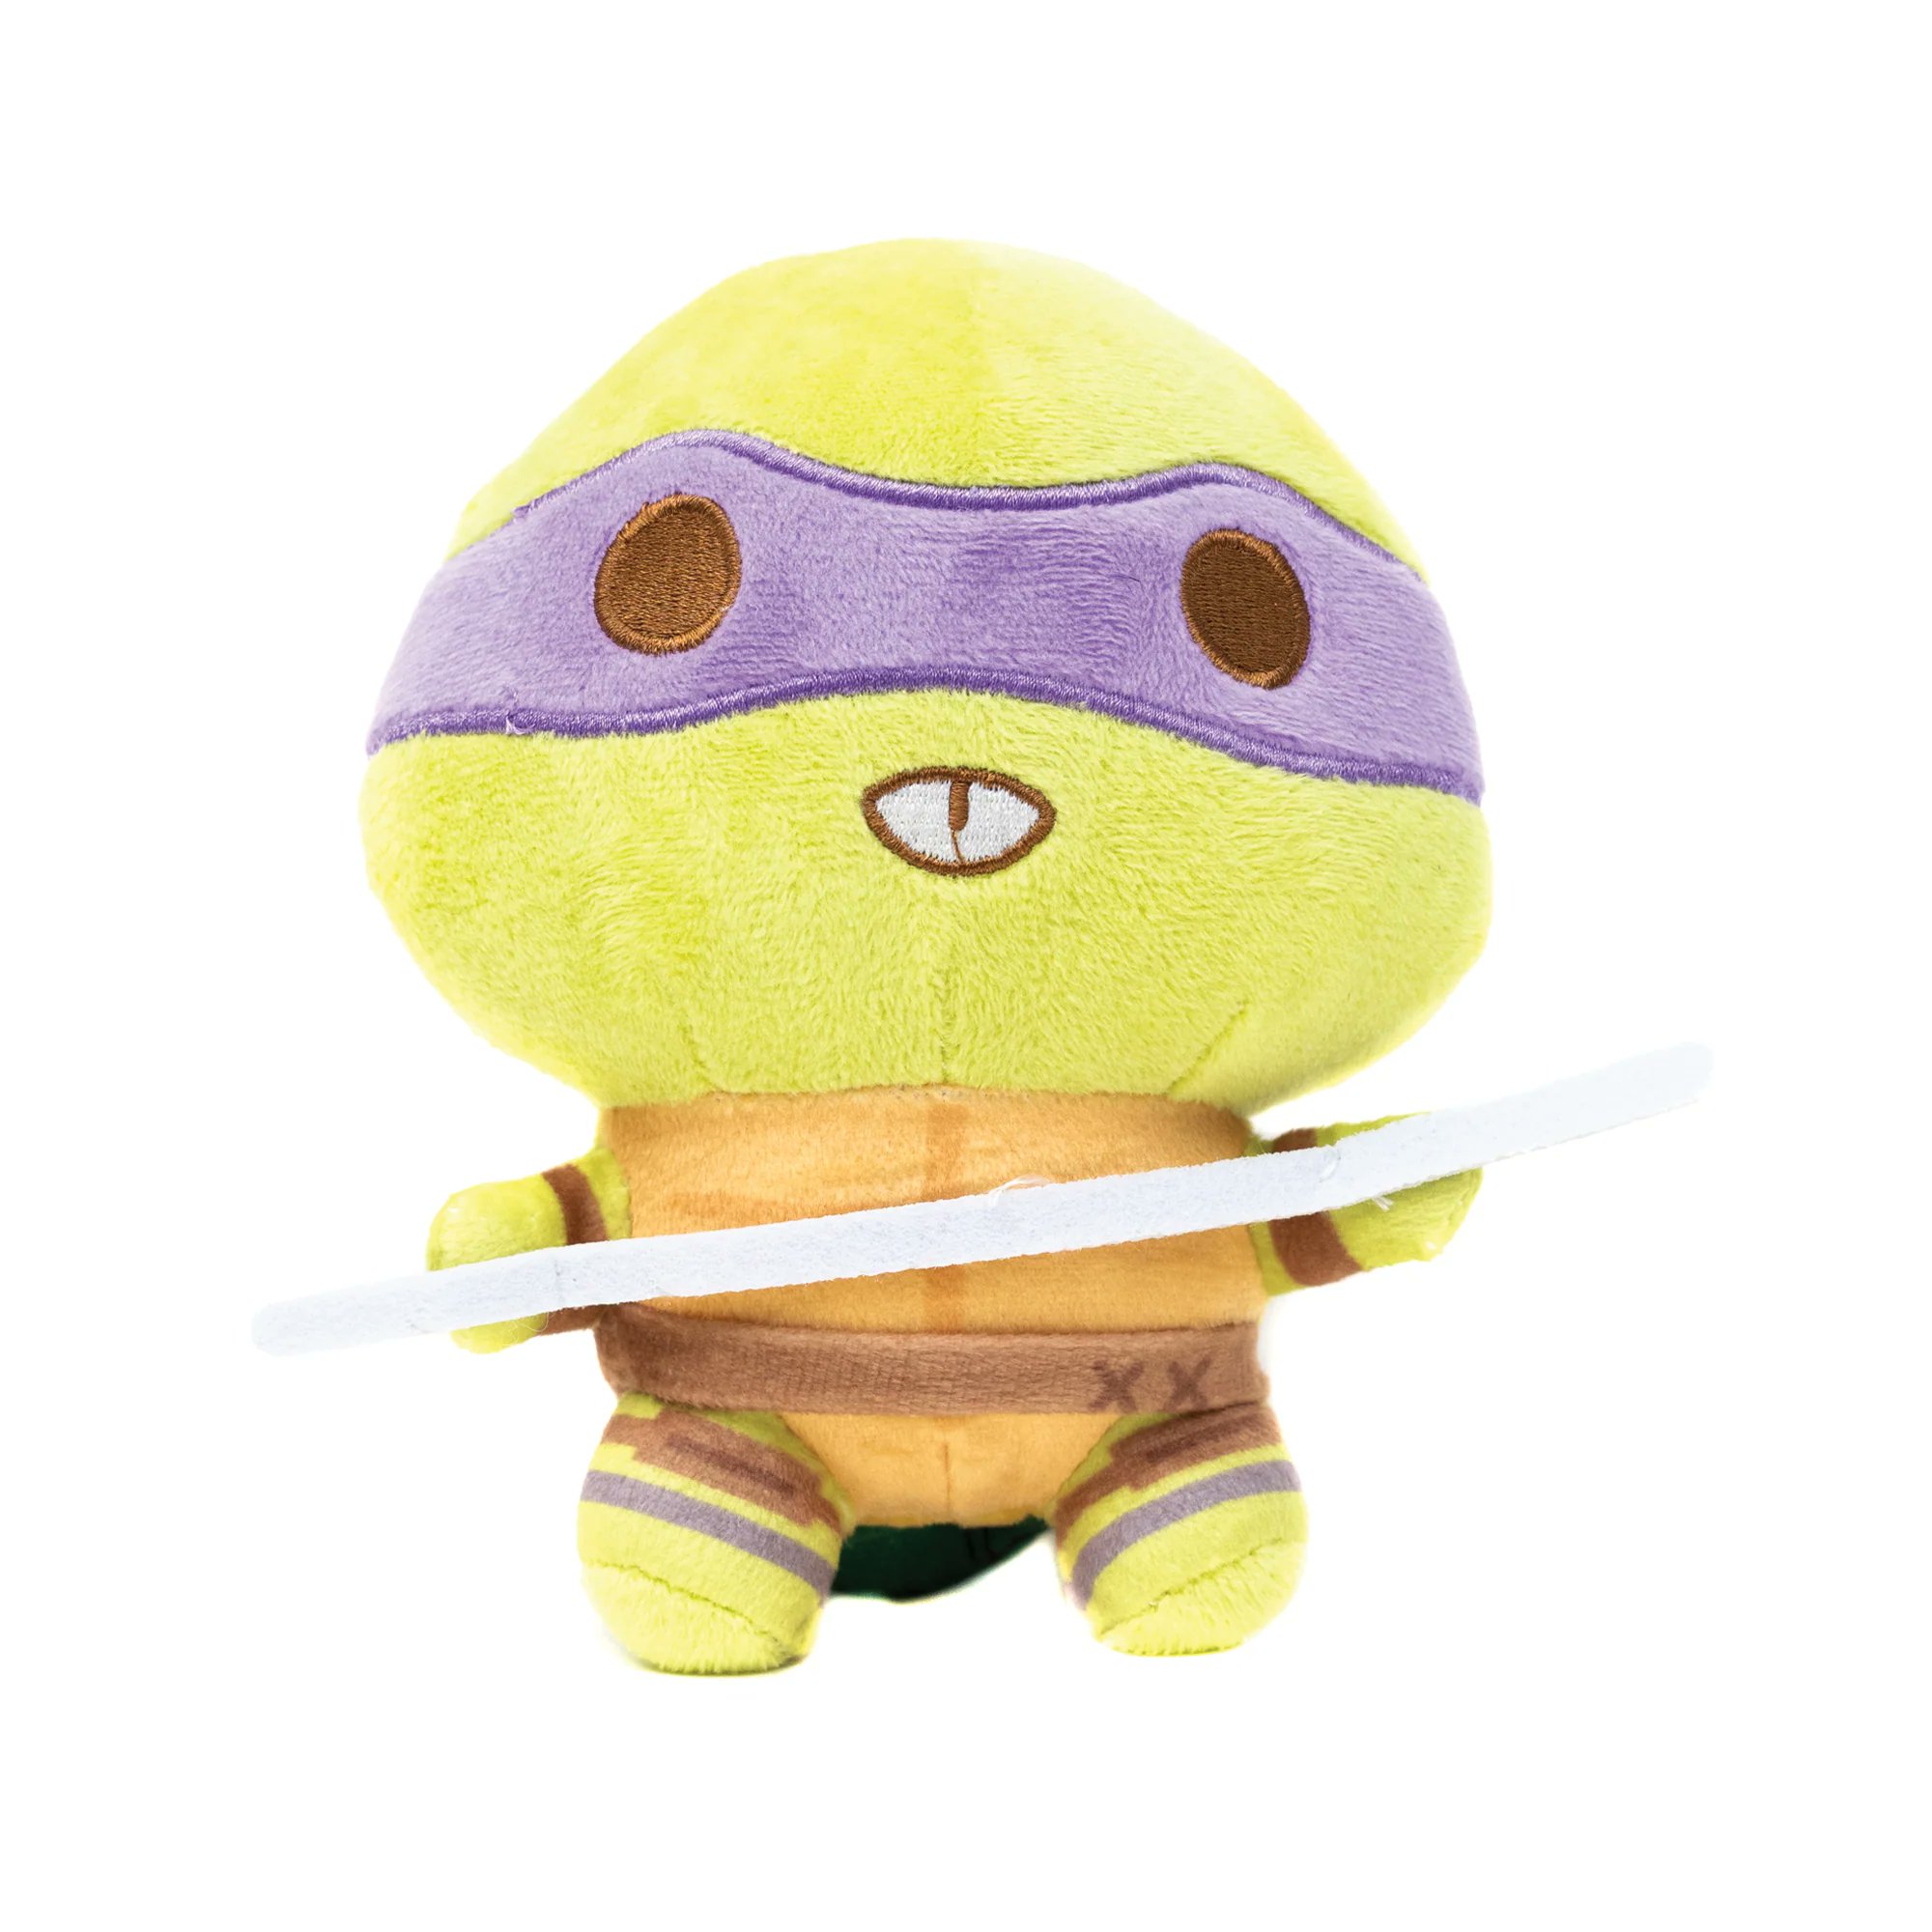 Raphael Teenage Mutant Ninja Turtles Dog Toy Buckle-Down